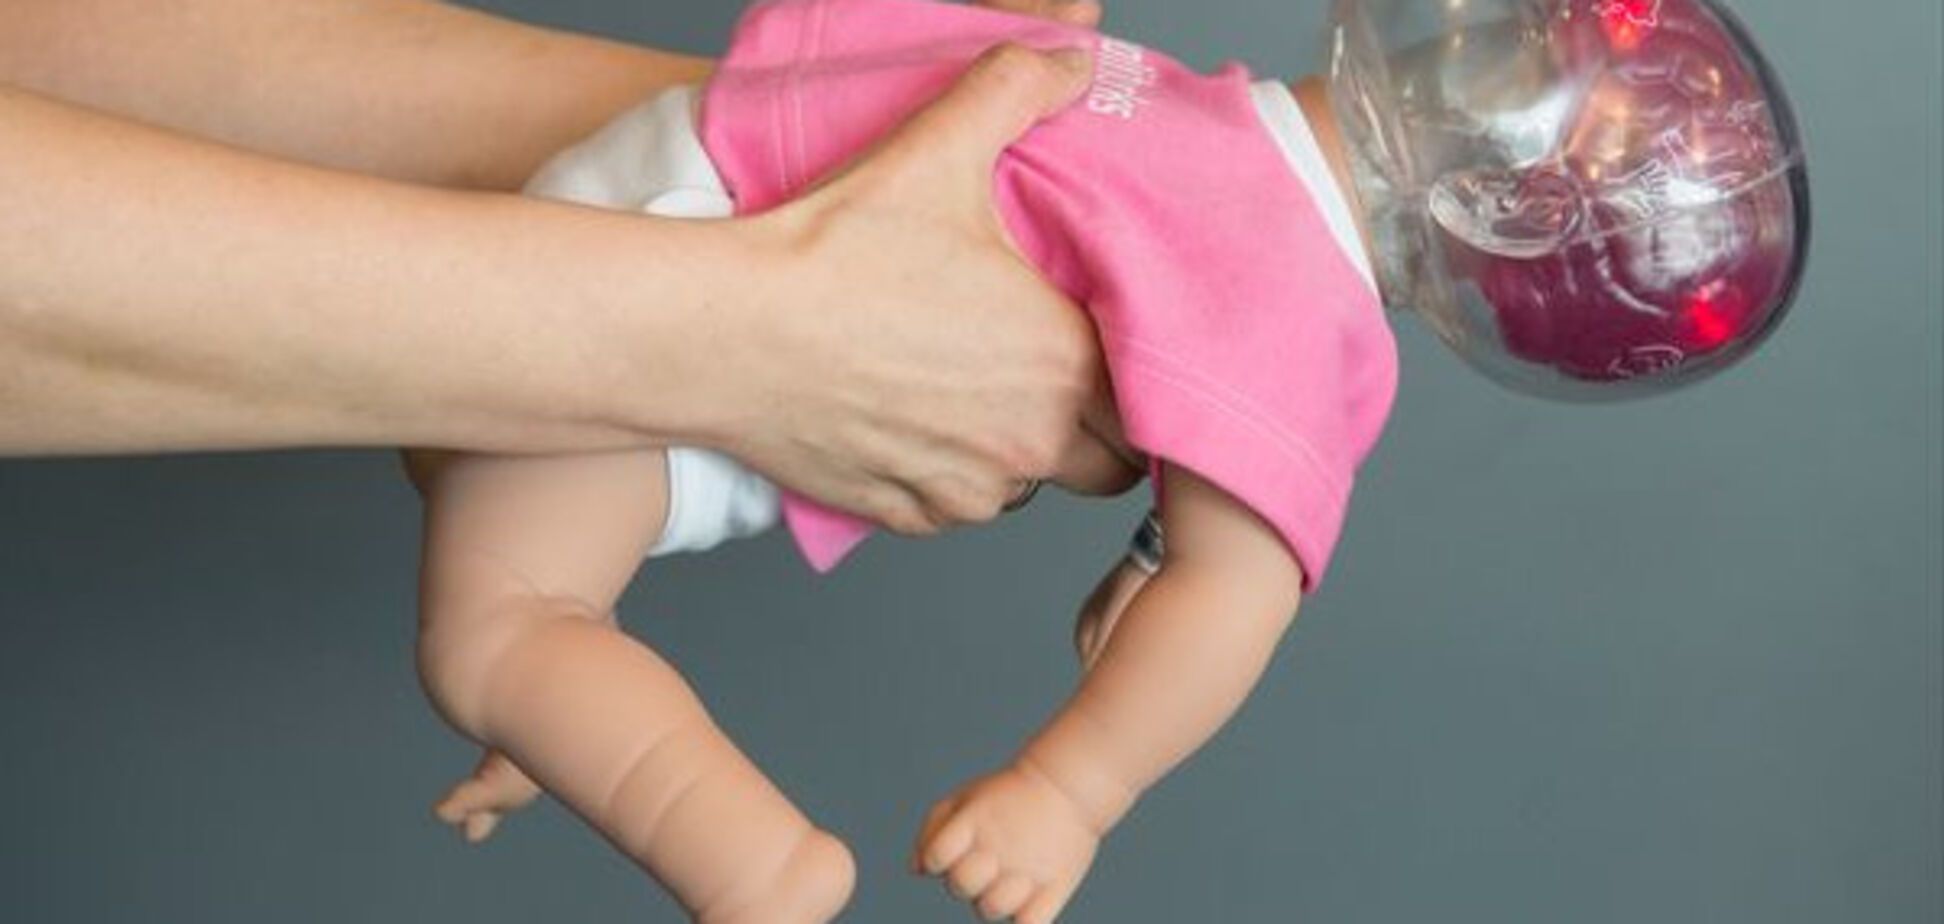 Незворотні пошкодження: вчені про те, що відбувається із мозком дитини під час струшування